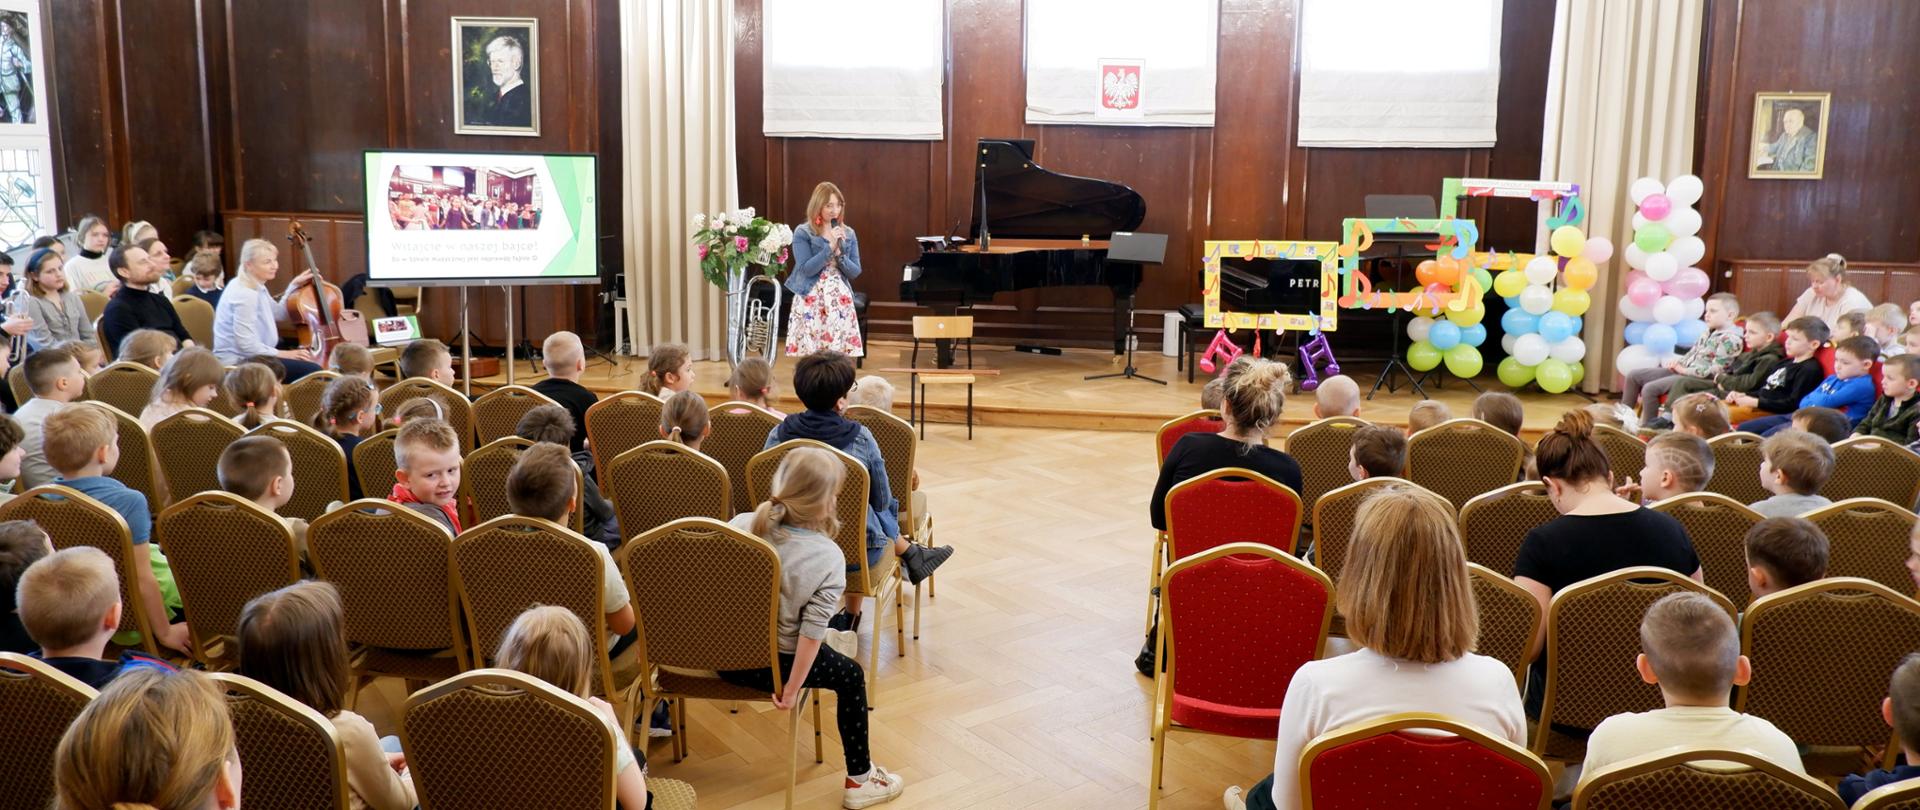 Zdjęcie przestawia dzieci siedzące w auli szkoły muzycznej. Dzieci słuchają panią która na środku sceny opowiada o instrumentach, które wyświetlane są na ekranie telewizyjnym po lewej stronie sceny.